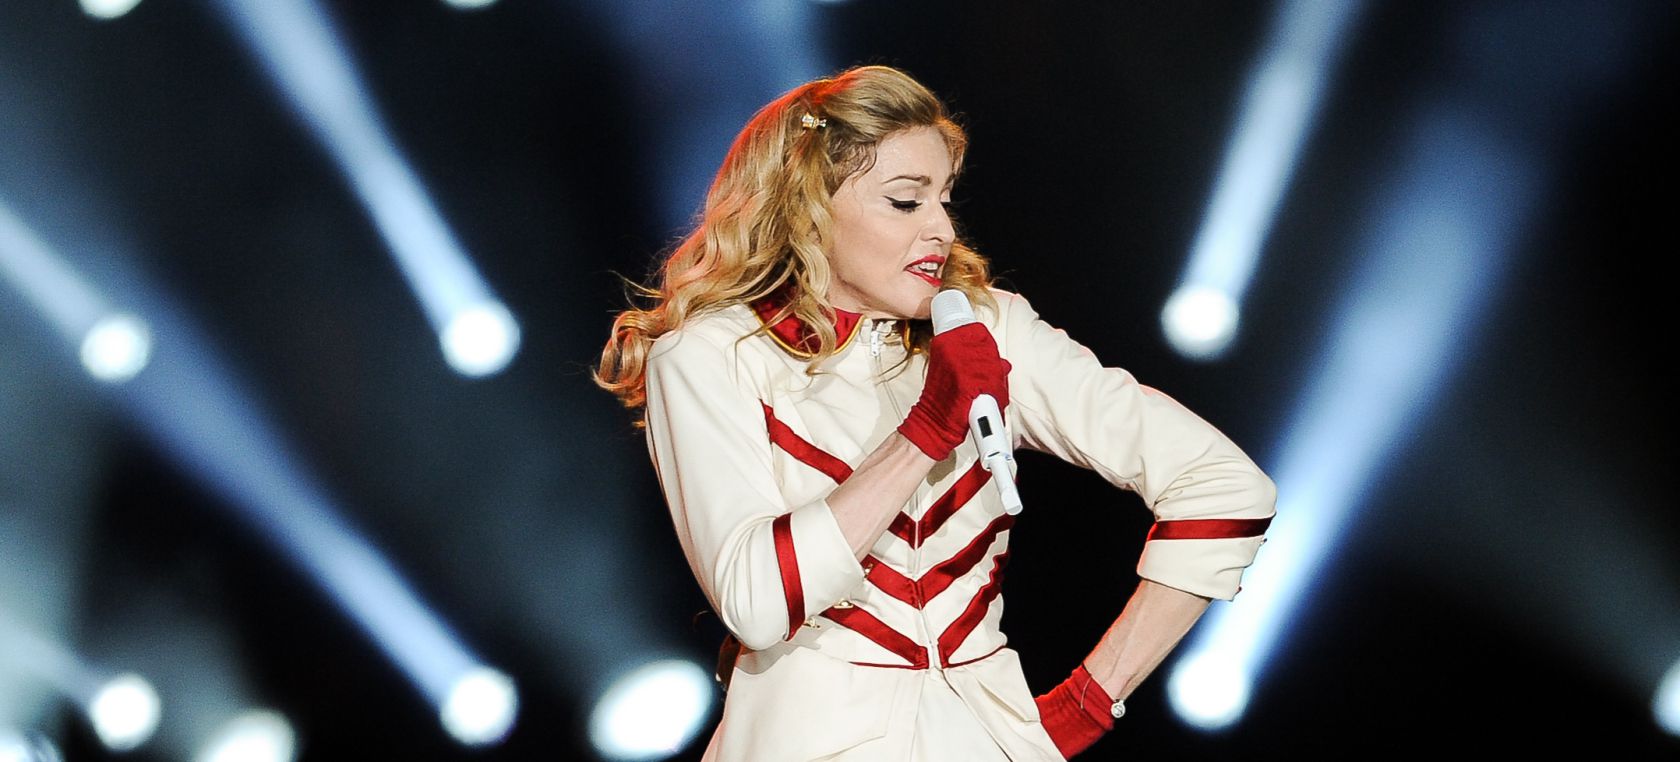 Los Principales de Madonna: la playlist con todos sus éxitos en LOS40